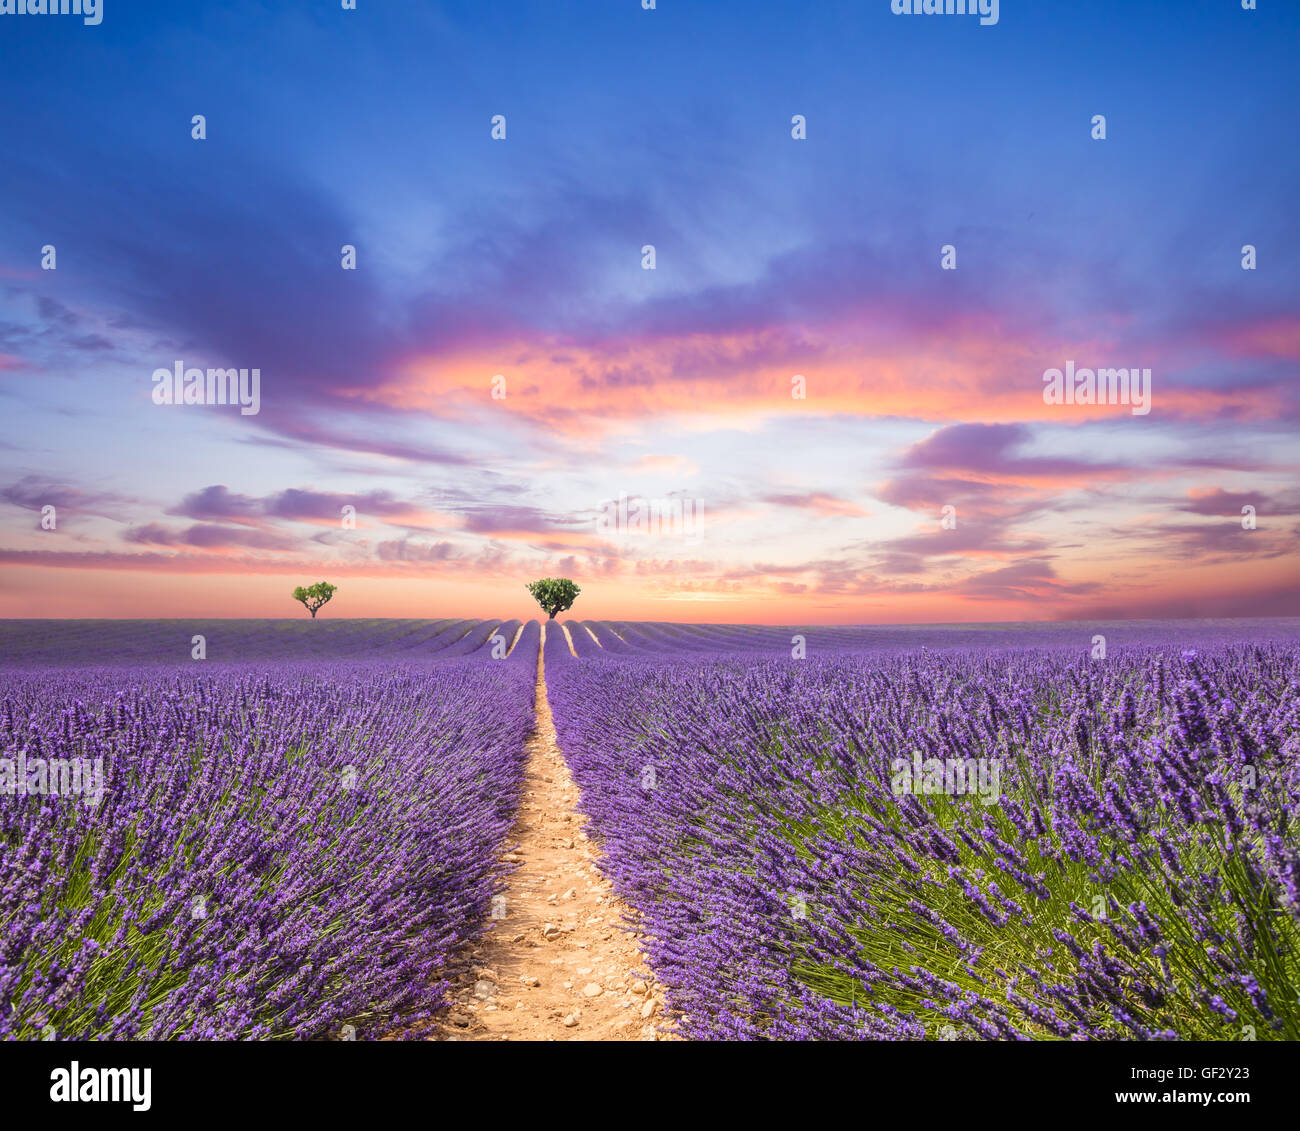 Beau paysage de champ de lavande en fleurs dans le coucher du soleil, les arbres solitaires en amont sur l'horizon. Provence, France, Europe. Banque D'Images